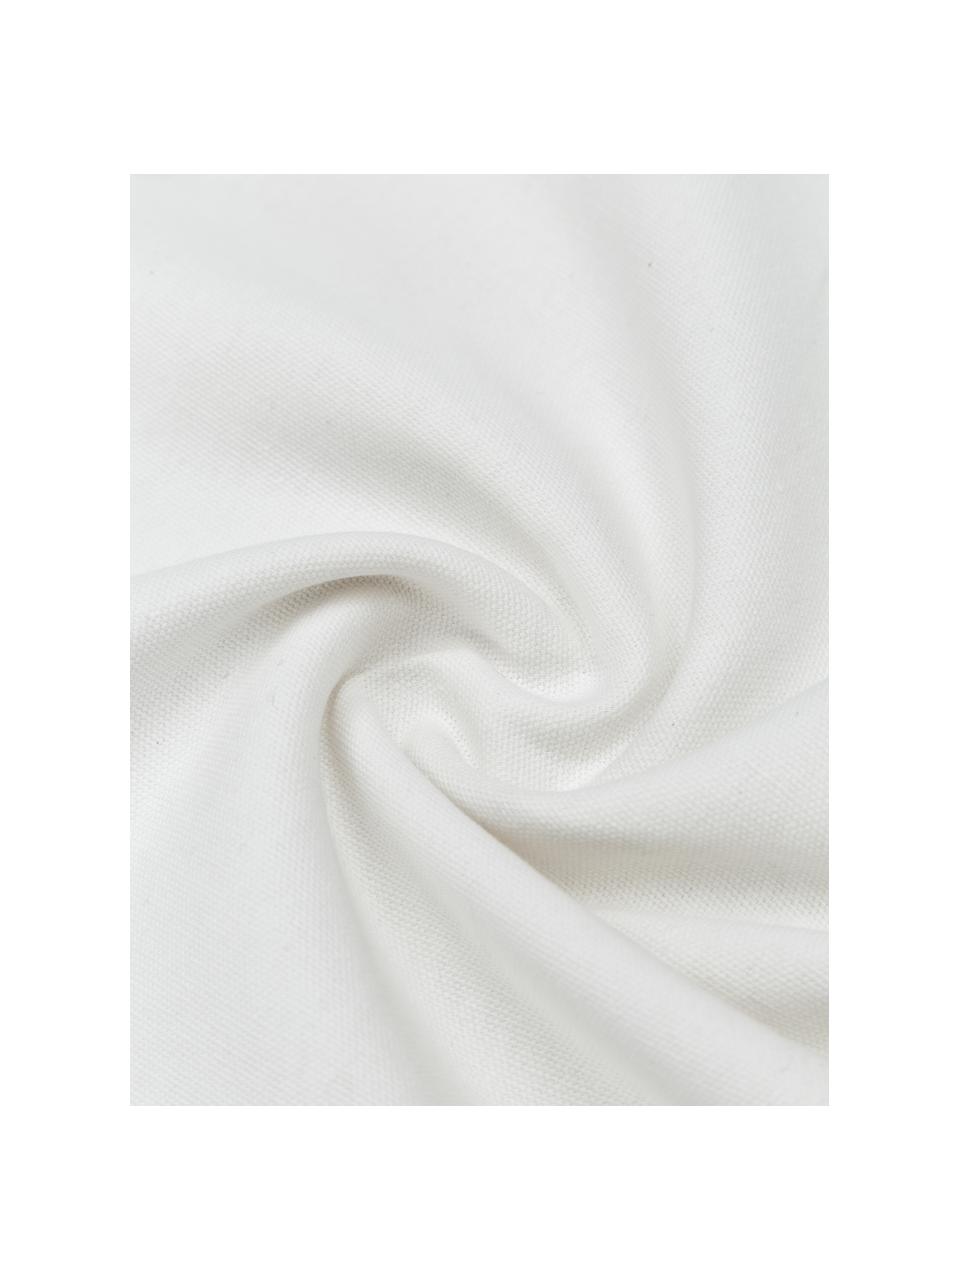 Bestickte Baumwoll-Kissenhülle Finca mit Fransen, 100% Baumwolle, Weiß, Schwarz, B 50 x L 50 cm